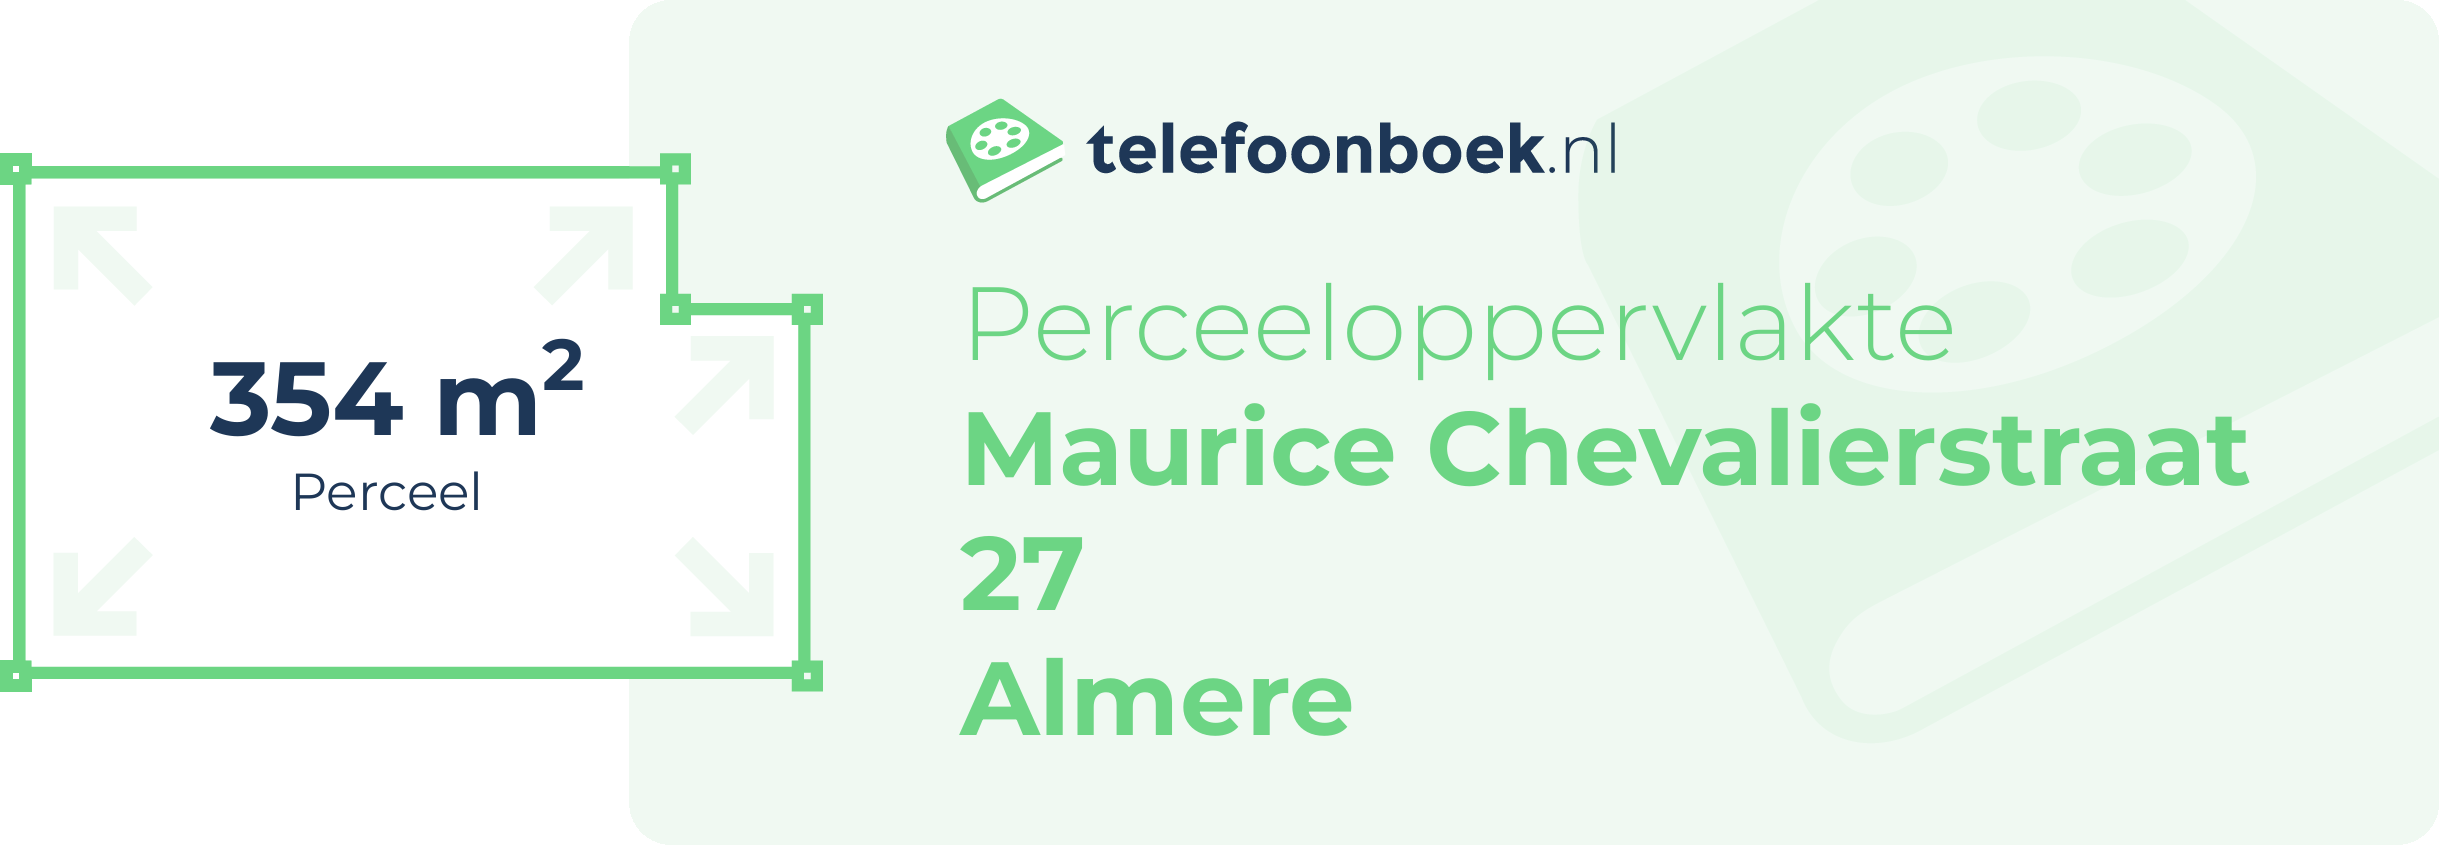 Perceeloppervlakte Maurice Chevalierstraat 27 Almere